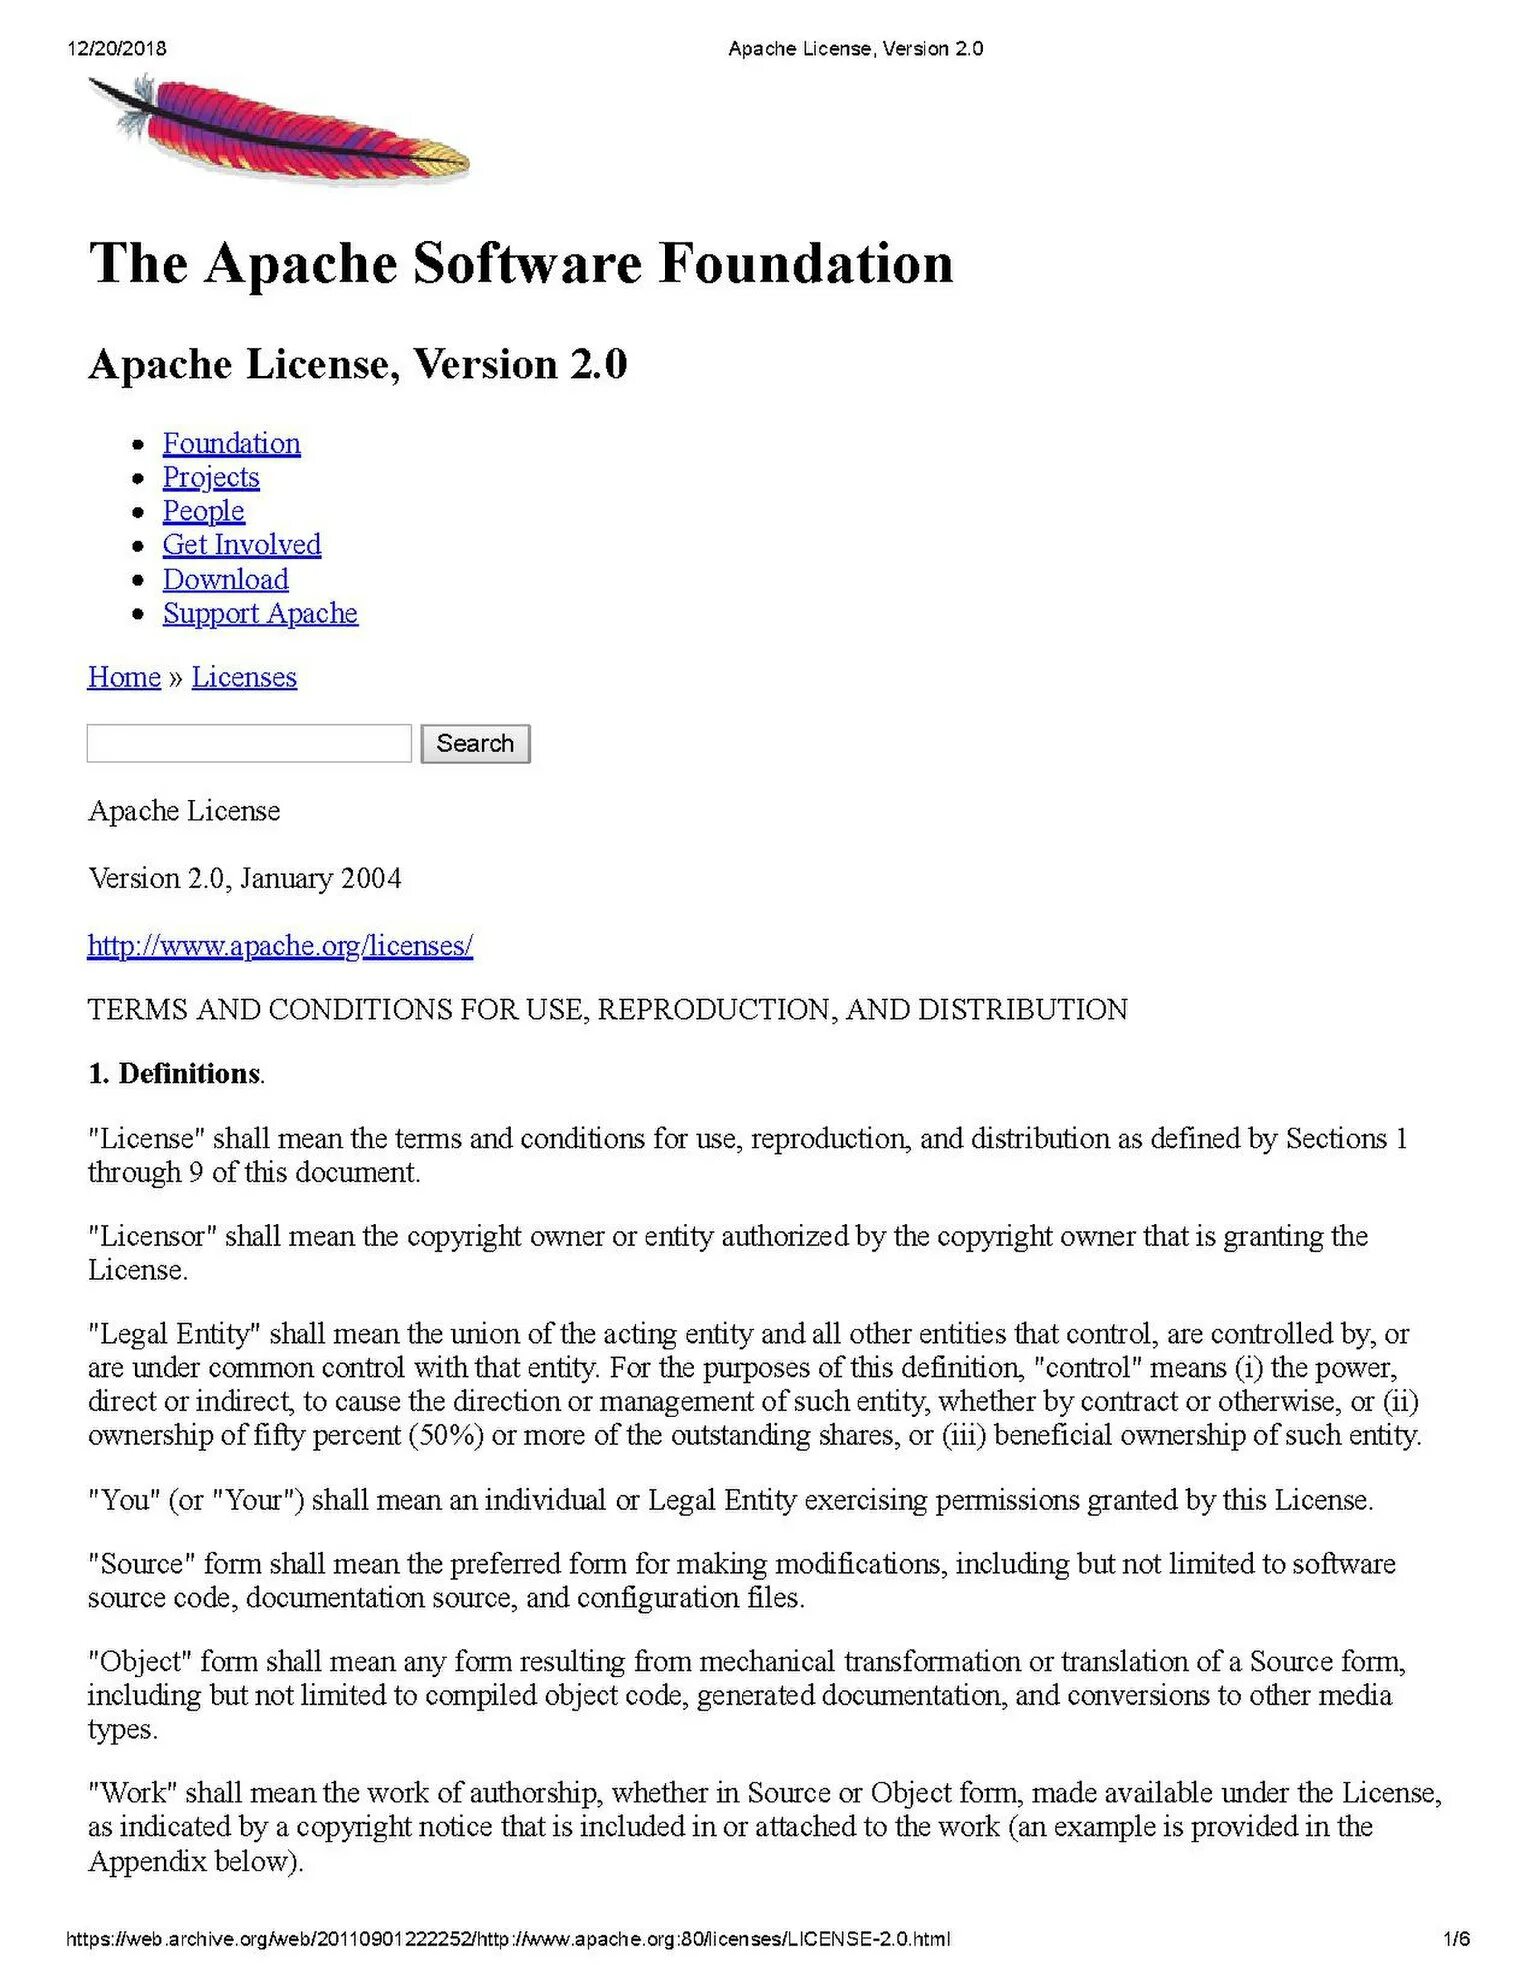 Apache license 2.0. Лицензия Apache. Apache 2.0 лицензия. Apache software License. Апачи лицензия.